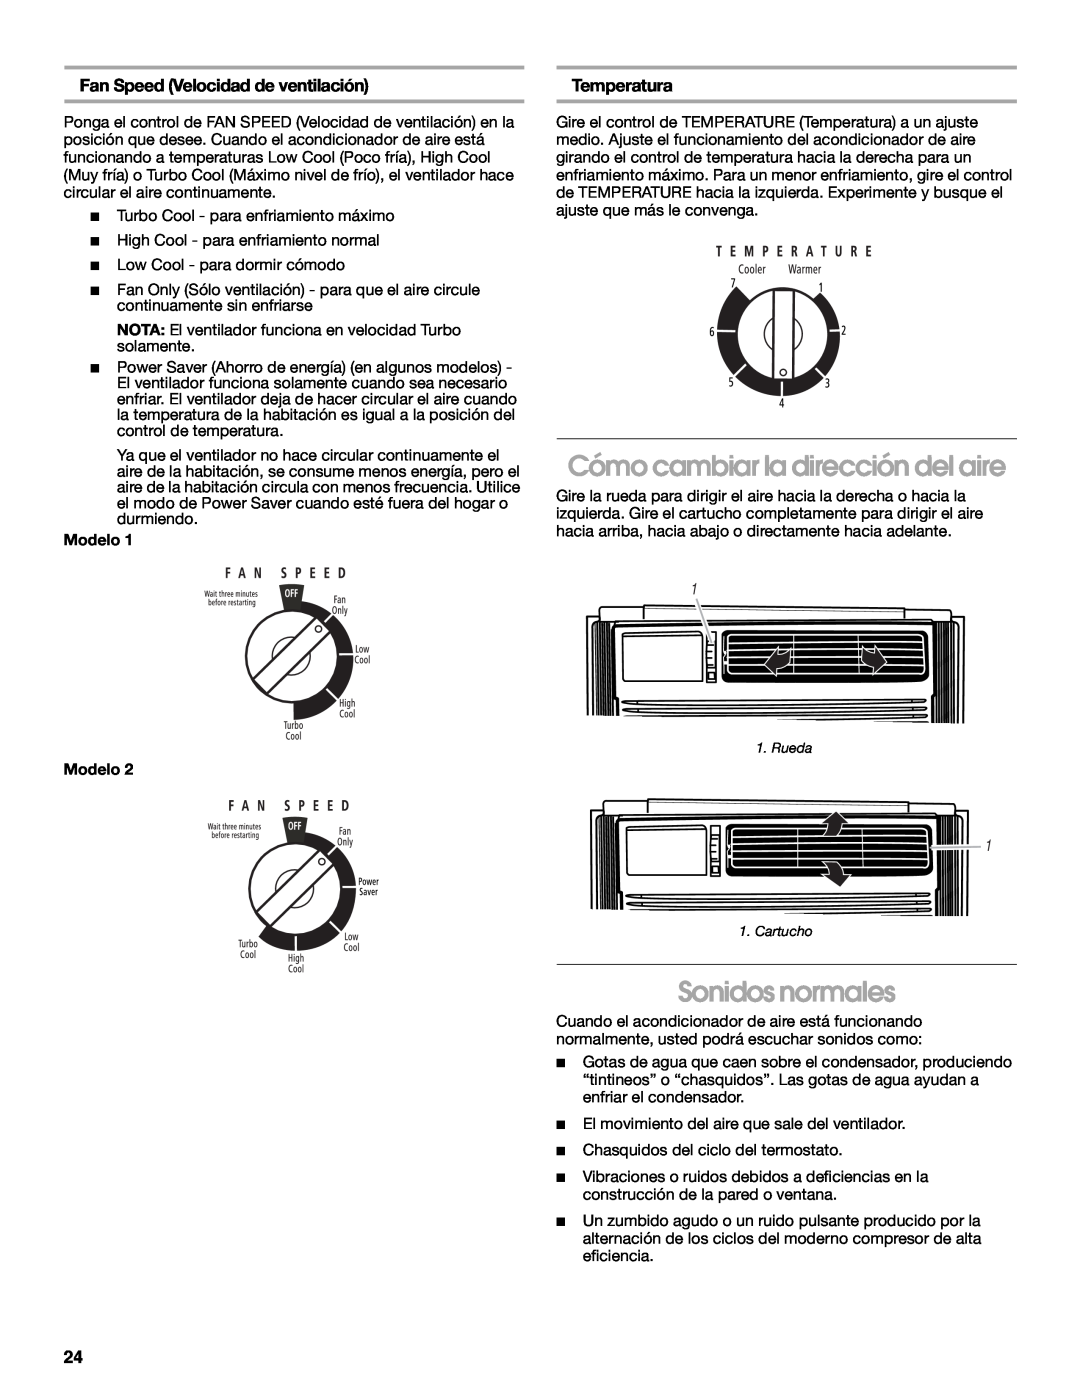 Whirlpool CA10WXP0 Cómo cambiar la dirección del aire, Sonidos normales, Fan Speed Velocidad de ventilación, Temperatura 